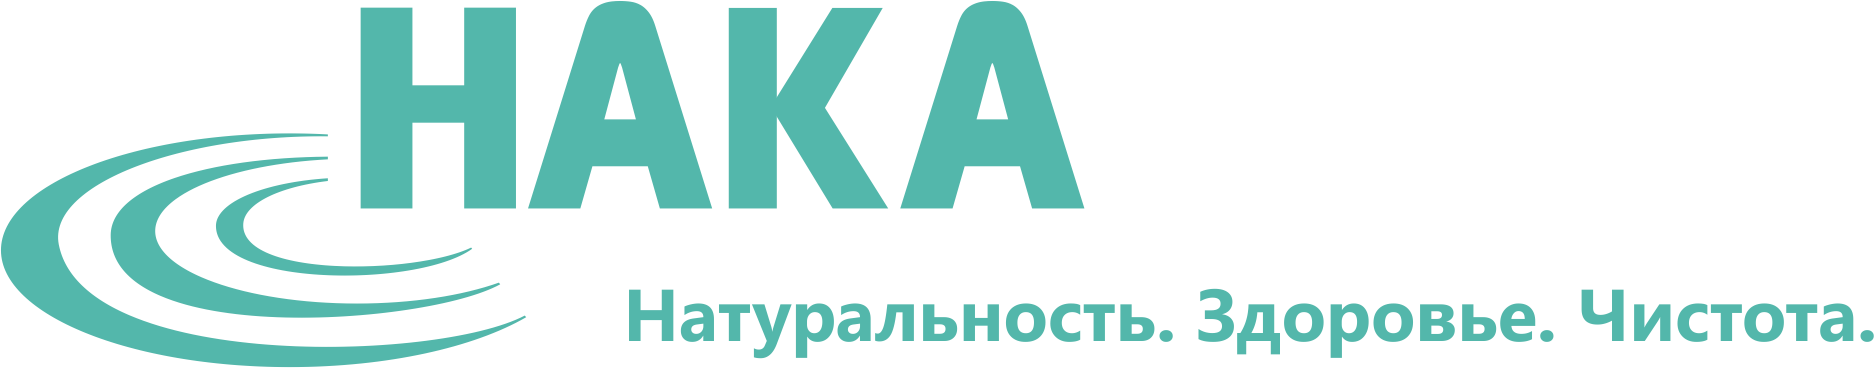 HAKA-logo-1